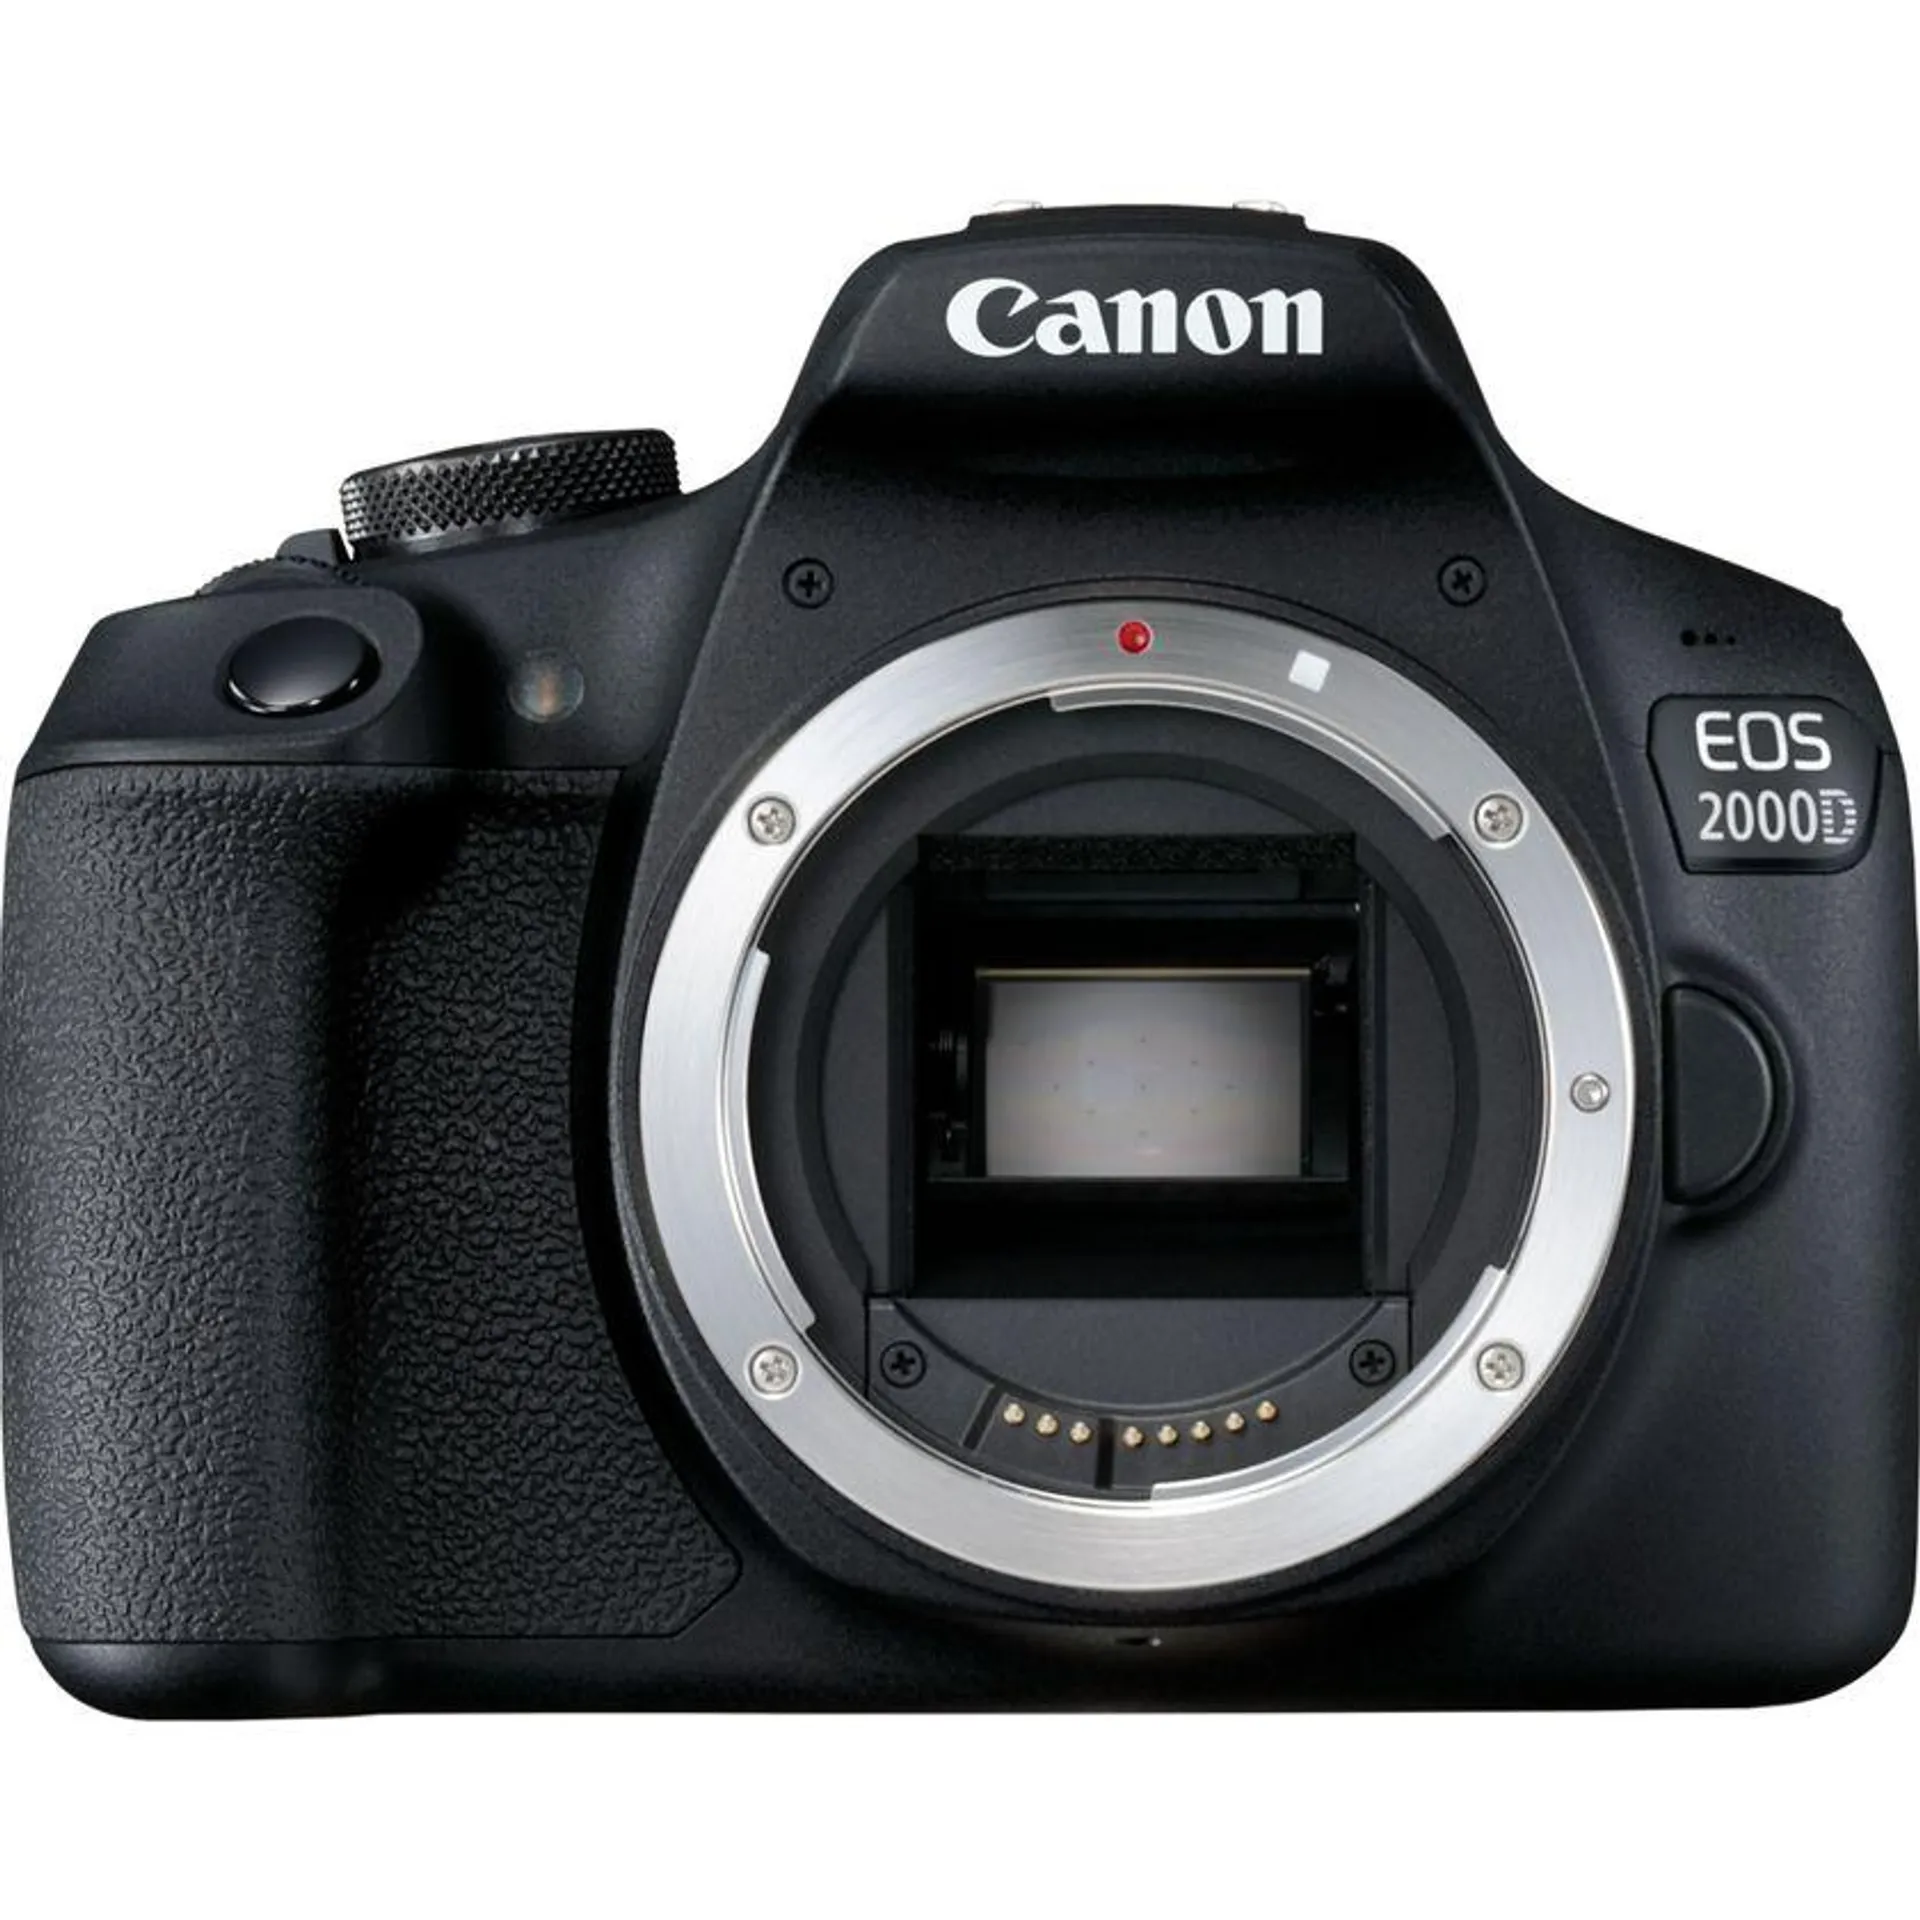 Cuerpo de la cámara Canon EOS 2000D, negro